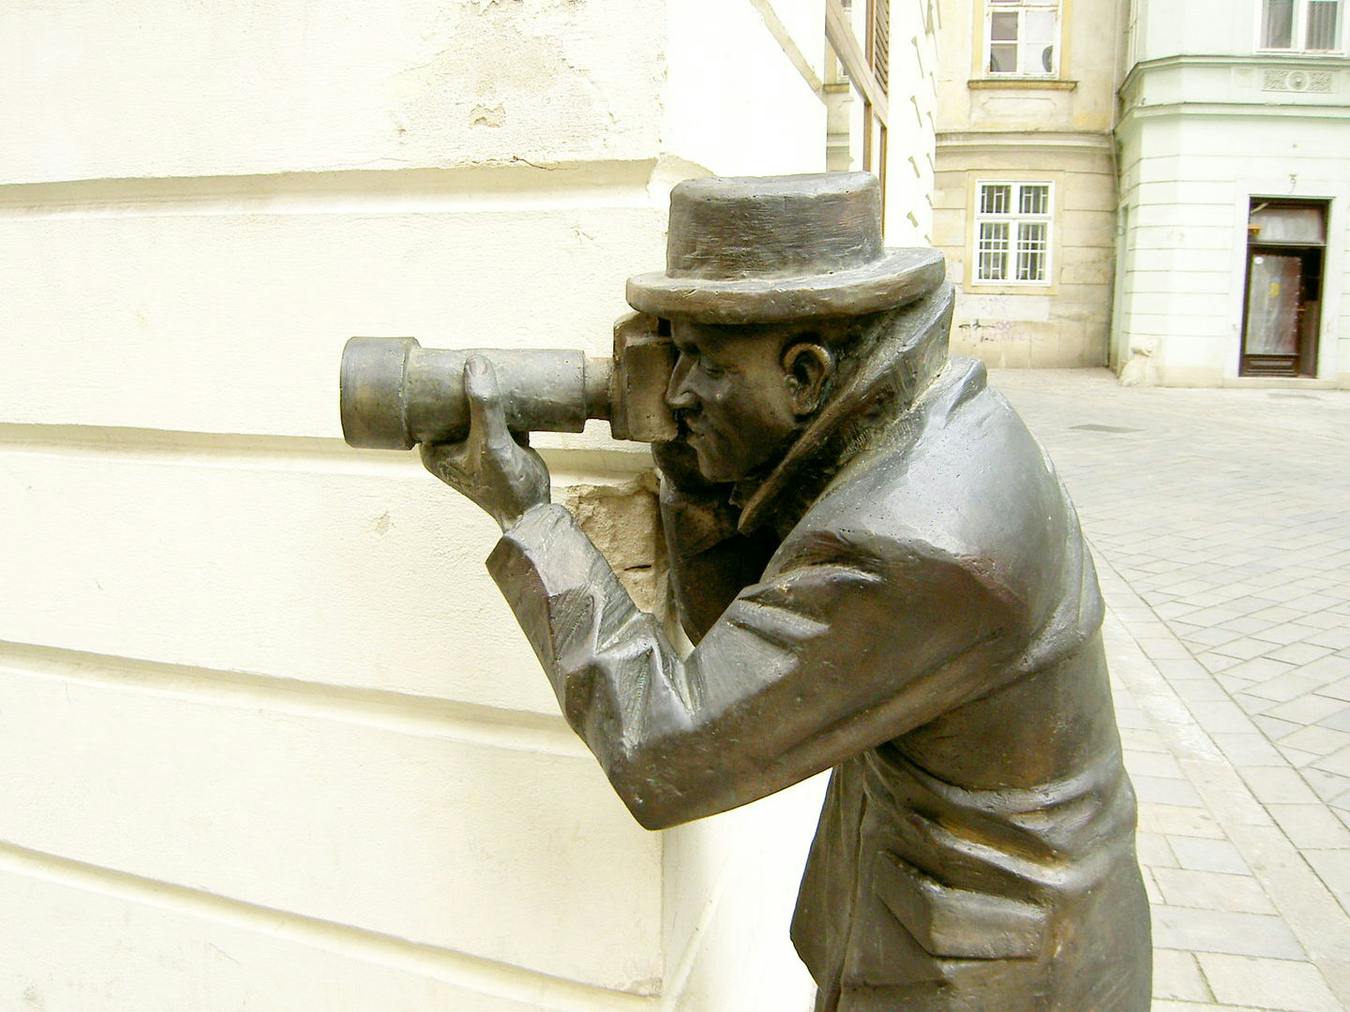 La escultura del papparazzi sacando fotos desde una esquina.